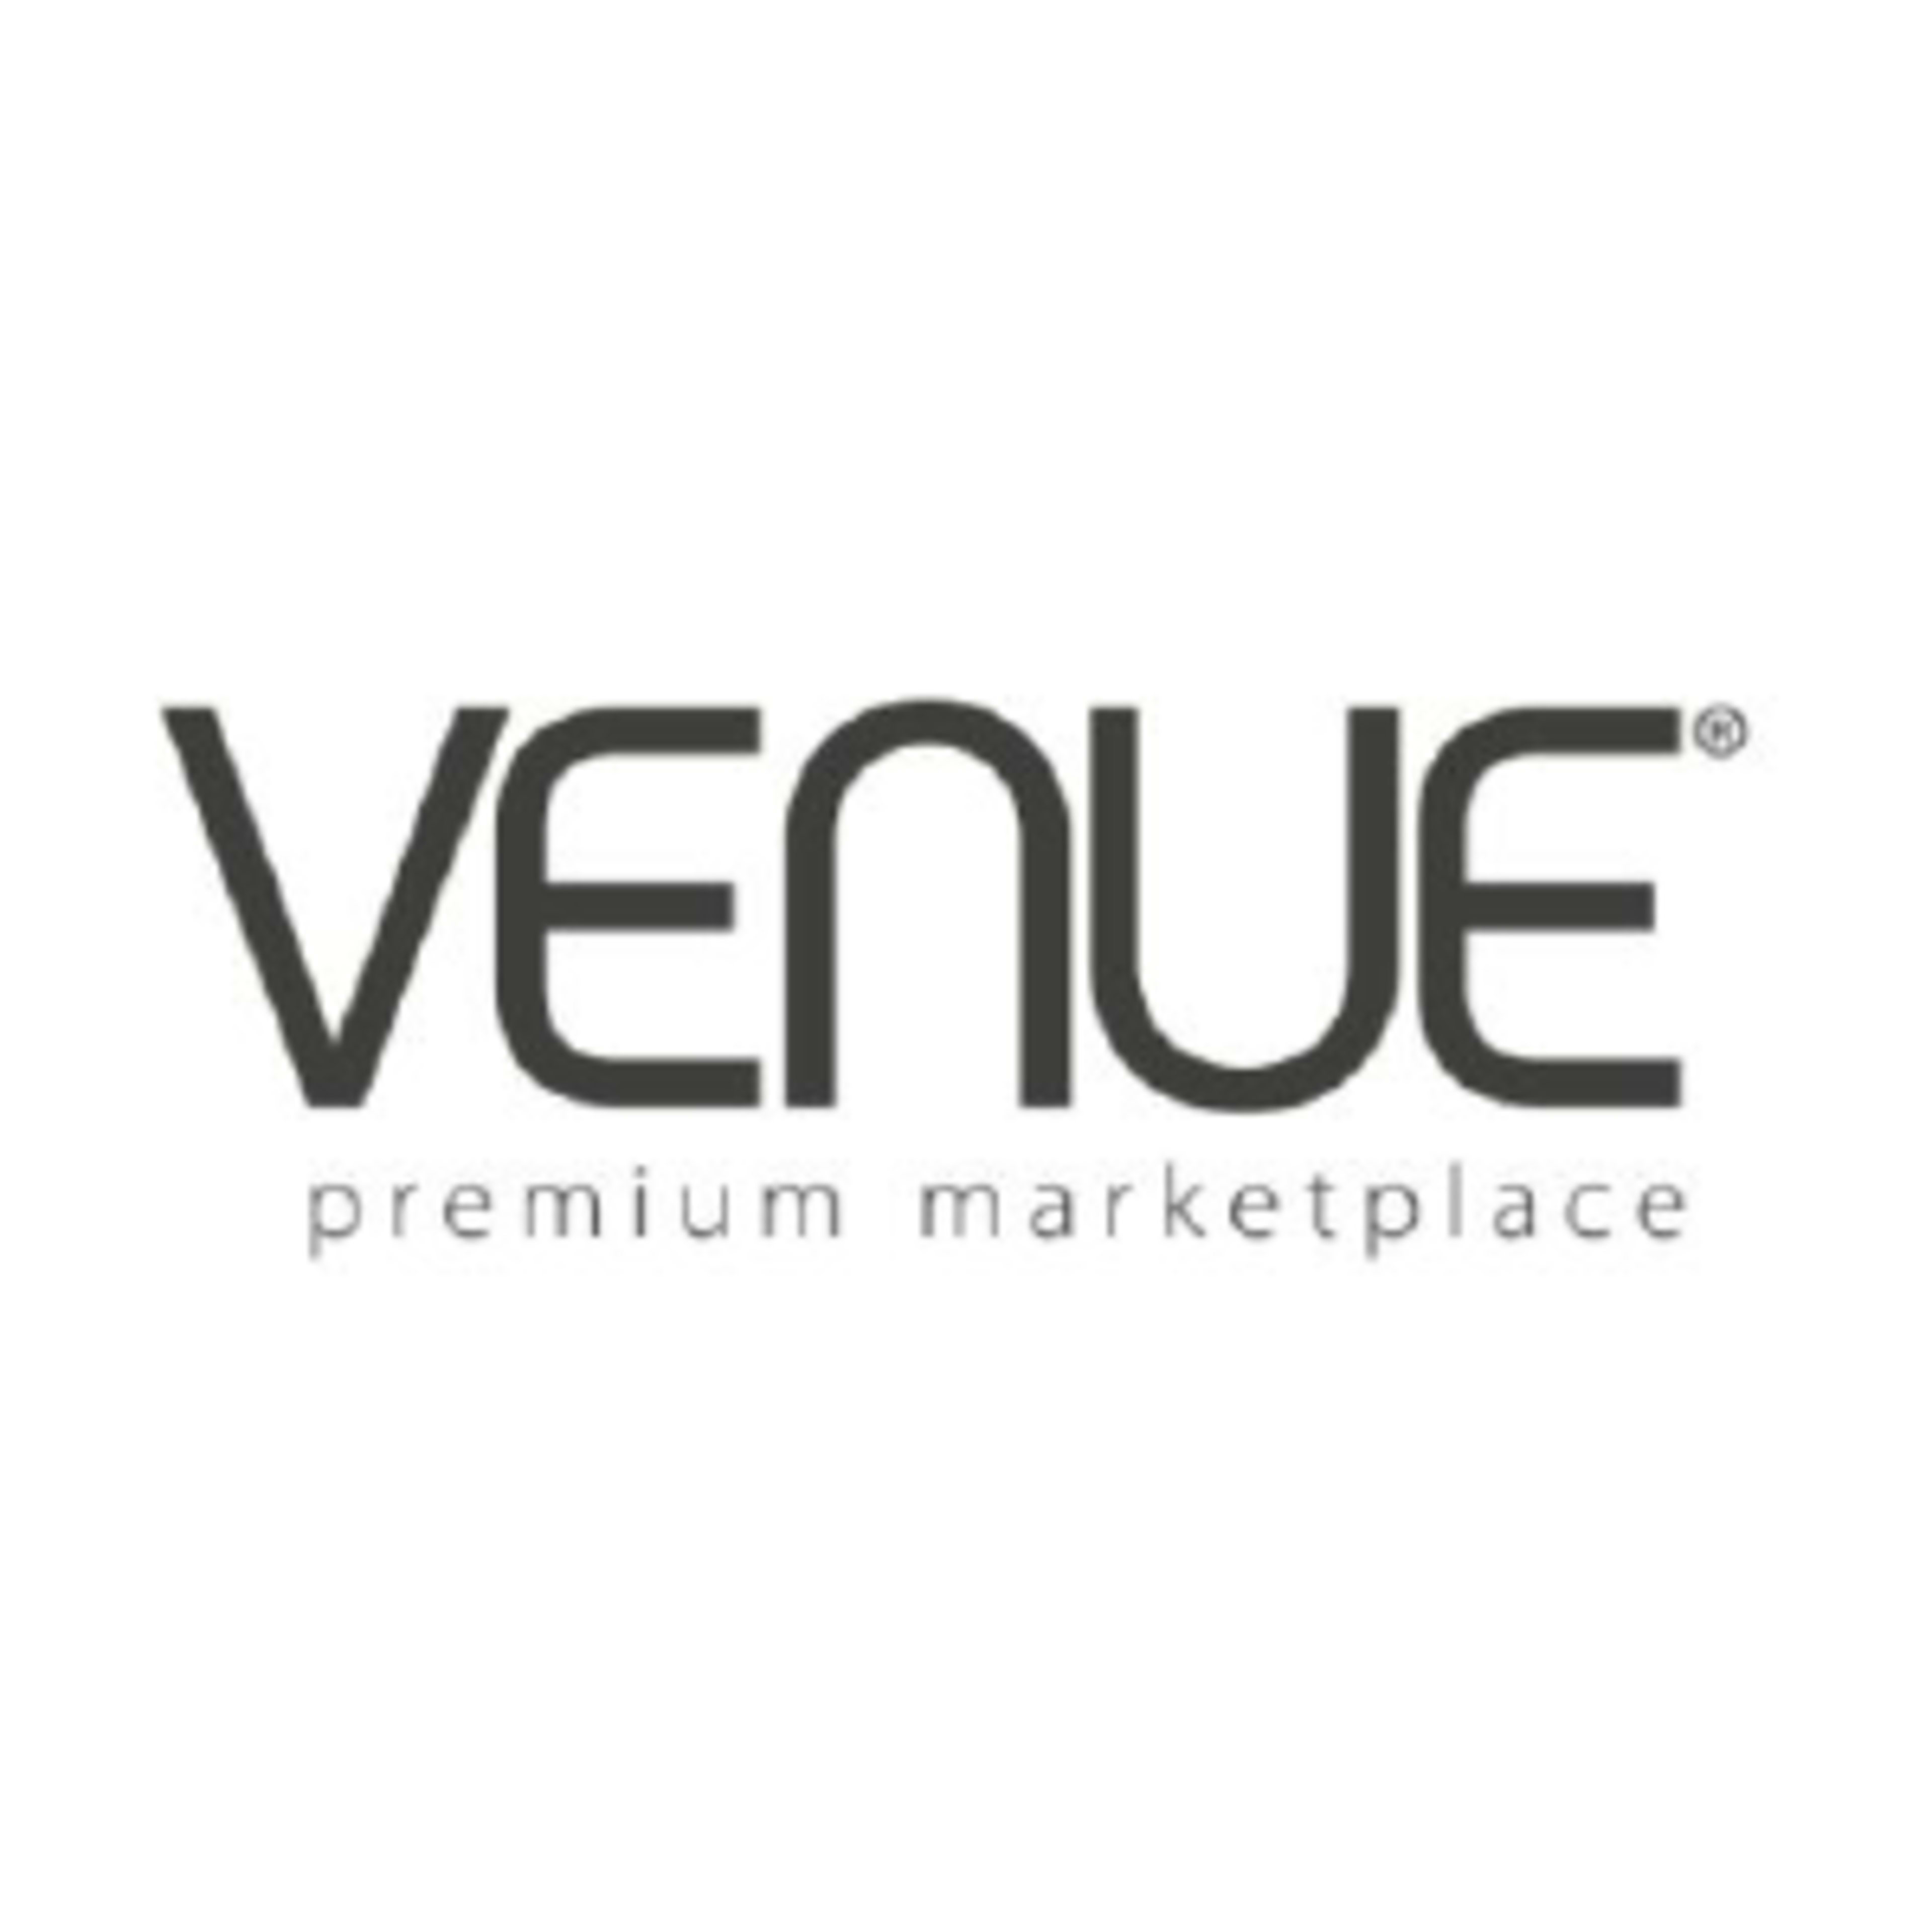 Venue.com Code